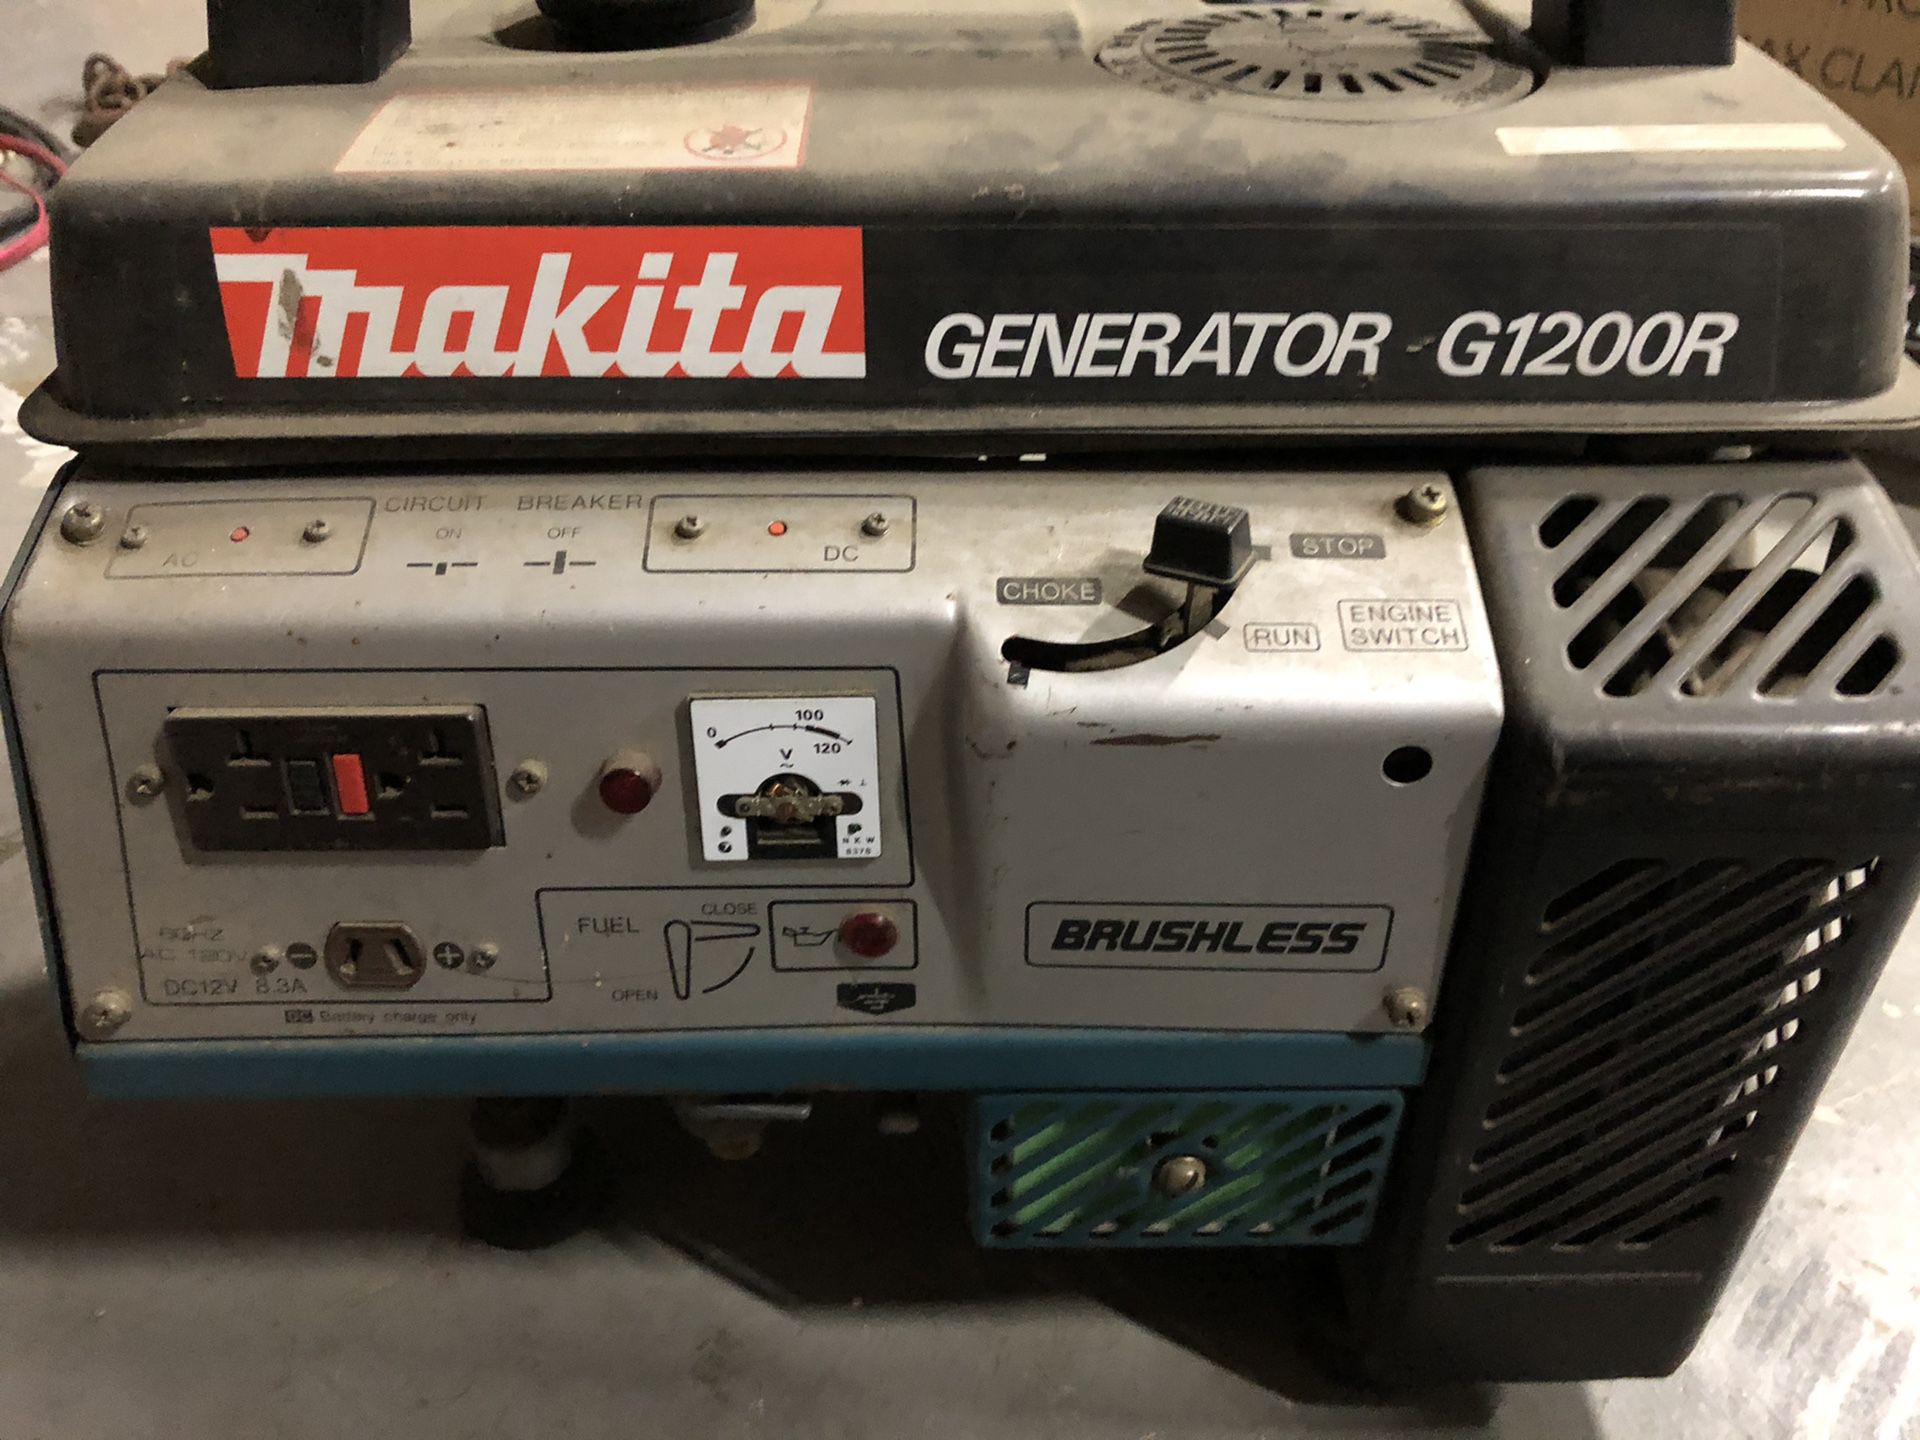 Makita generator G1200R